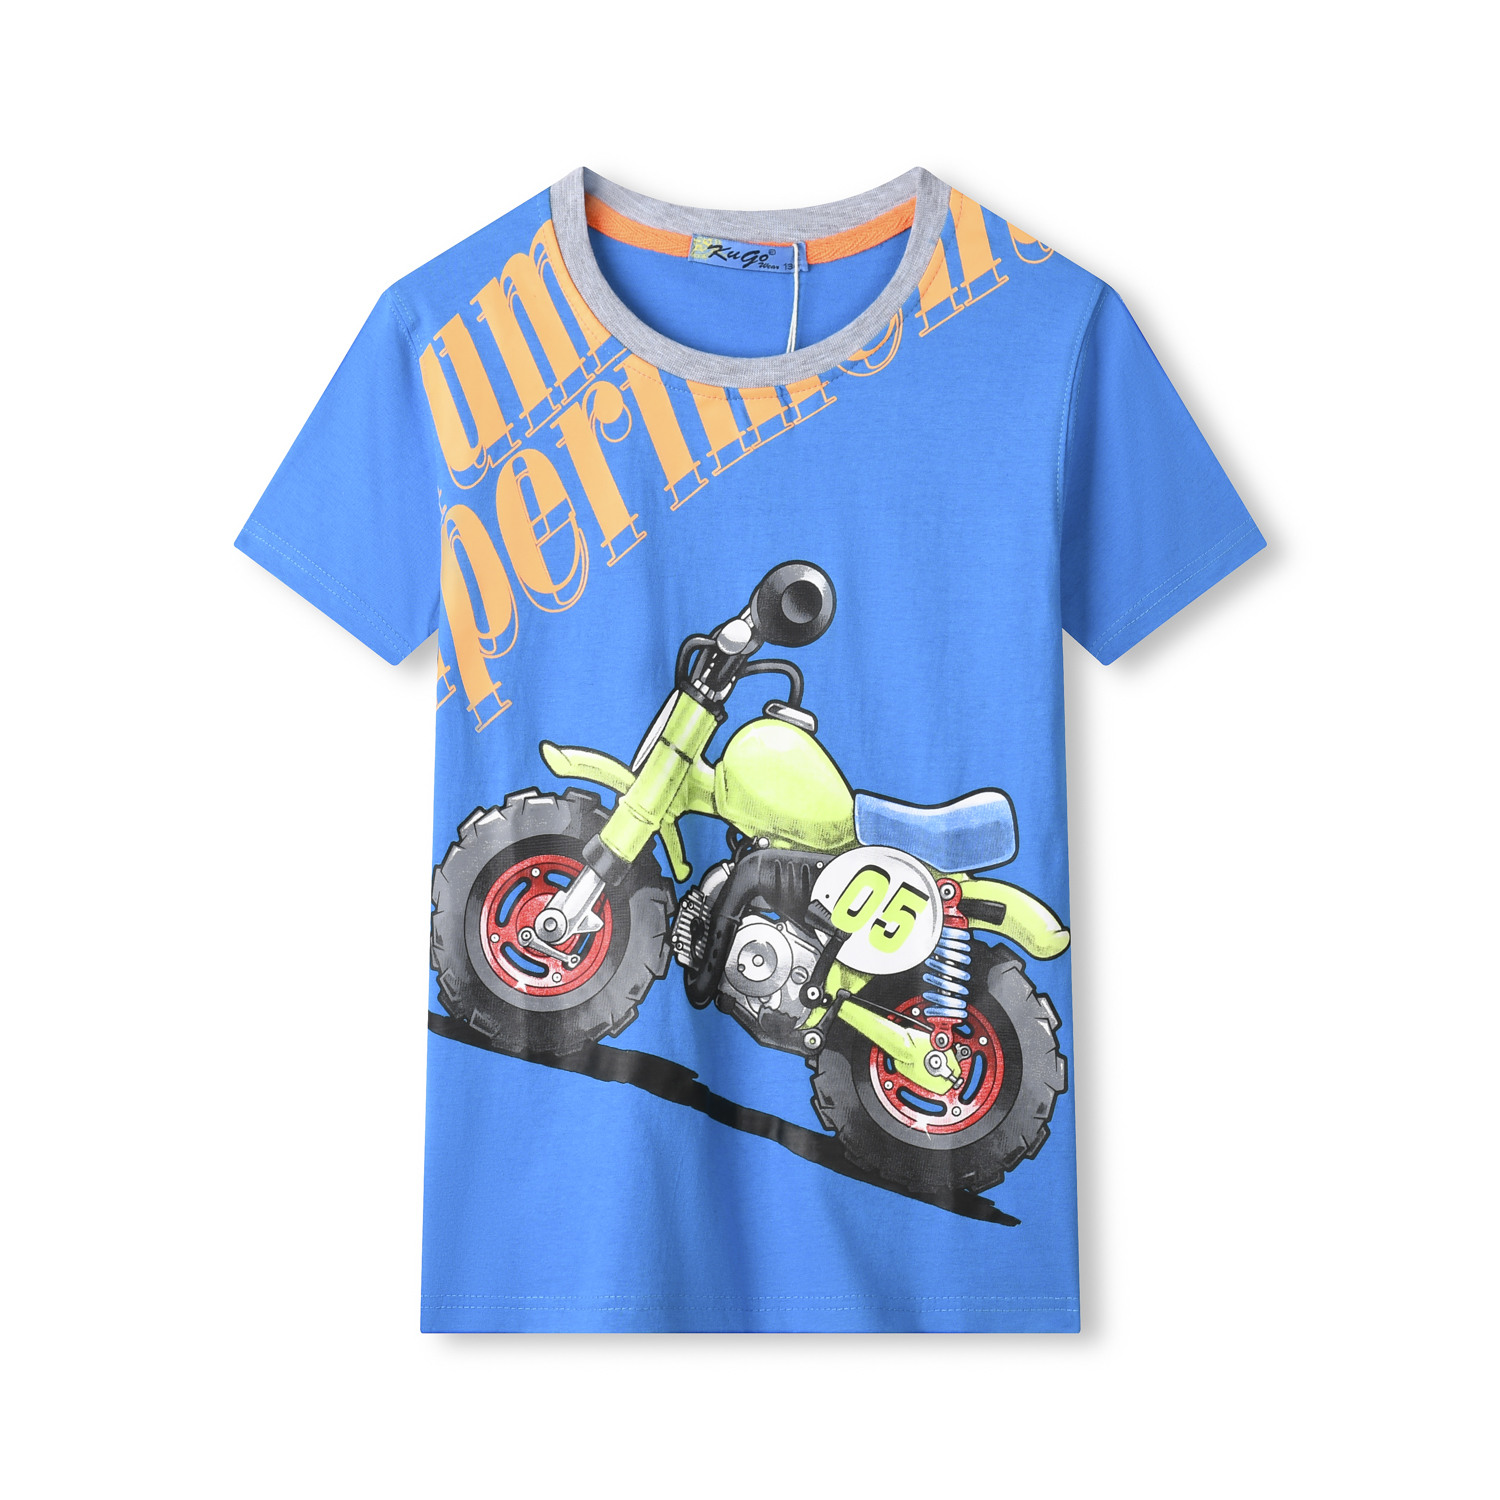 Chlapecké tričko - KUGO TM9206C, tyrkysová Barva: Tyrkysová, Velikost: 116